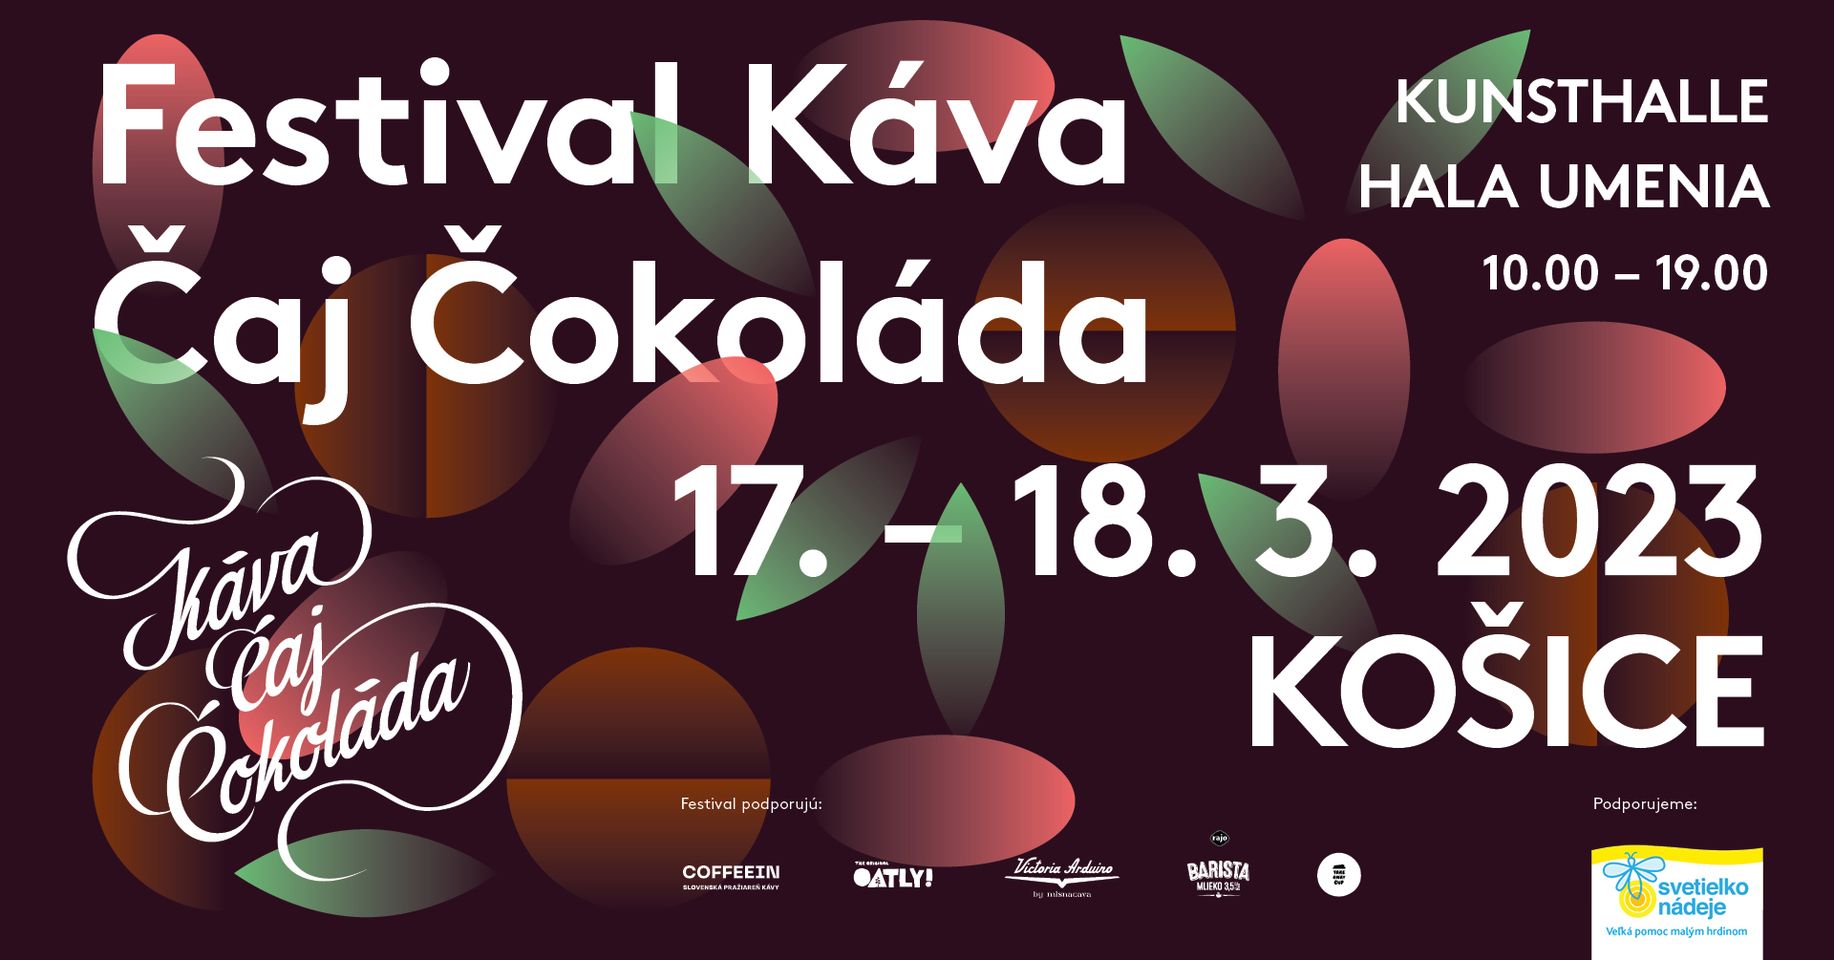 Festival Káva Čaj Čokoláda  2023 Kunsthalle / Hala umenia Košice